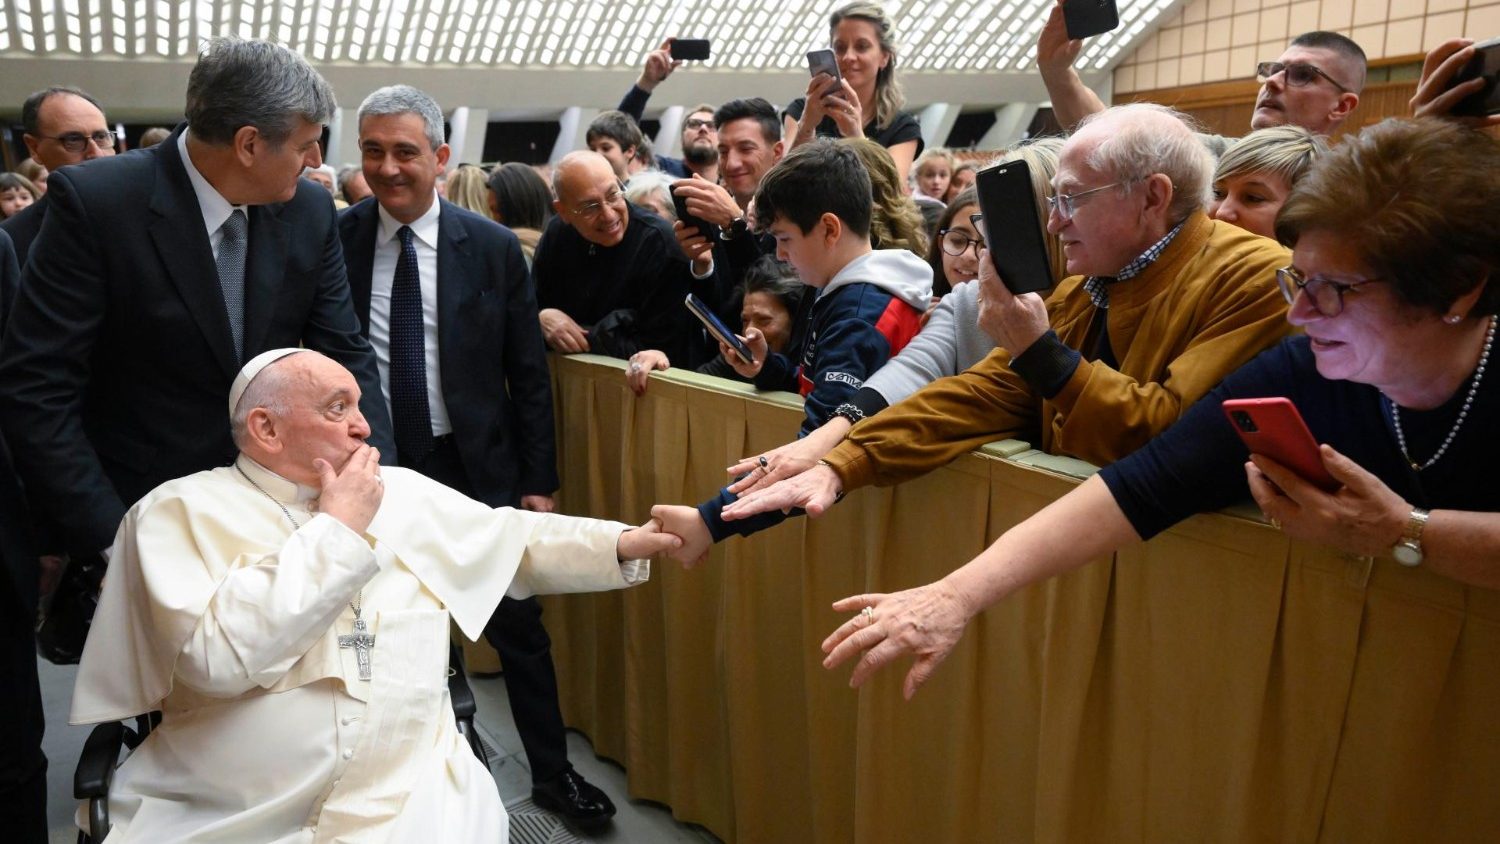 Il Papa ai cattolici italiani: Camminate sempre con carità fraterna